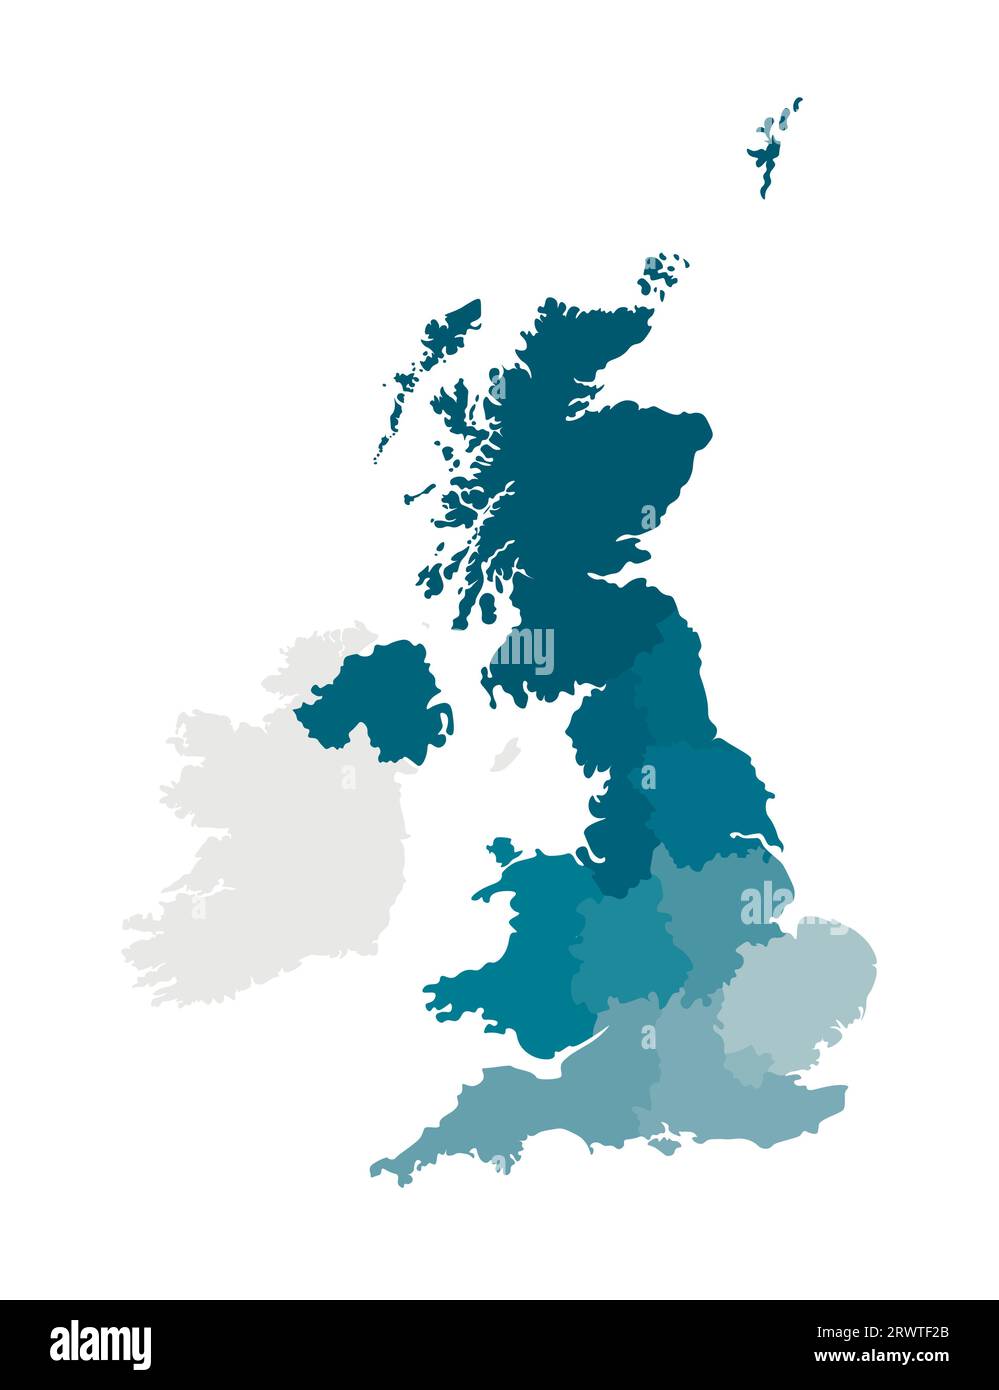 Vektor-isolierte Illustration einer vereinfachten Verwaltungskarte des Vereinigten Königreichs Großbritannien und Nordirland. Grenzen der Regionen. Kol Stock Vektor